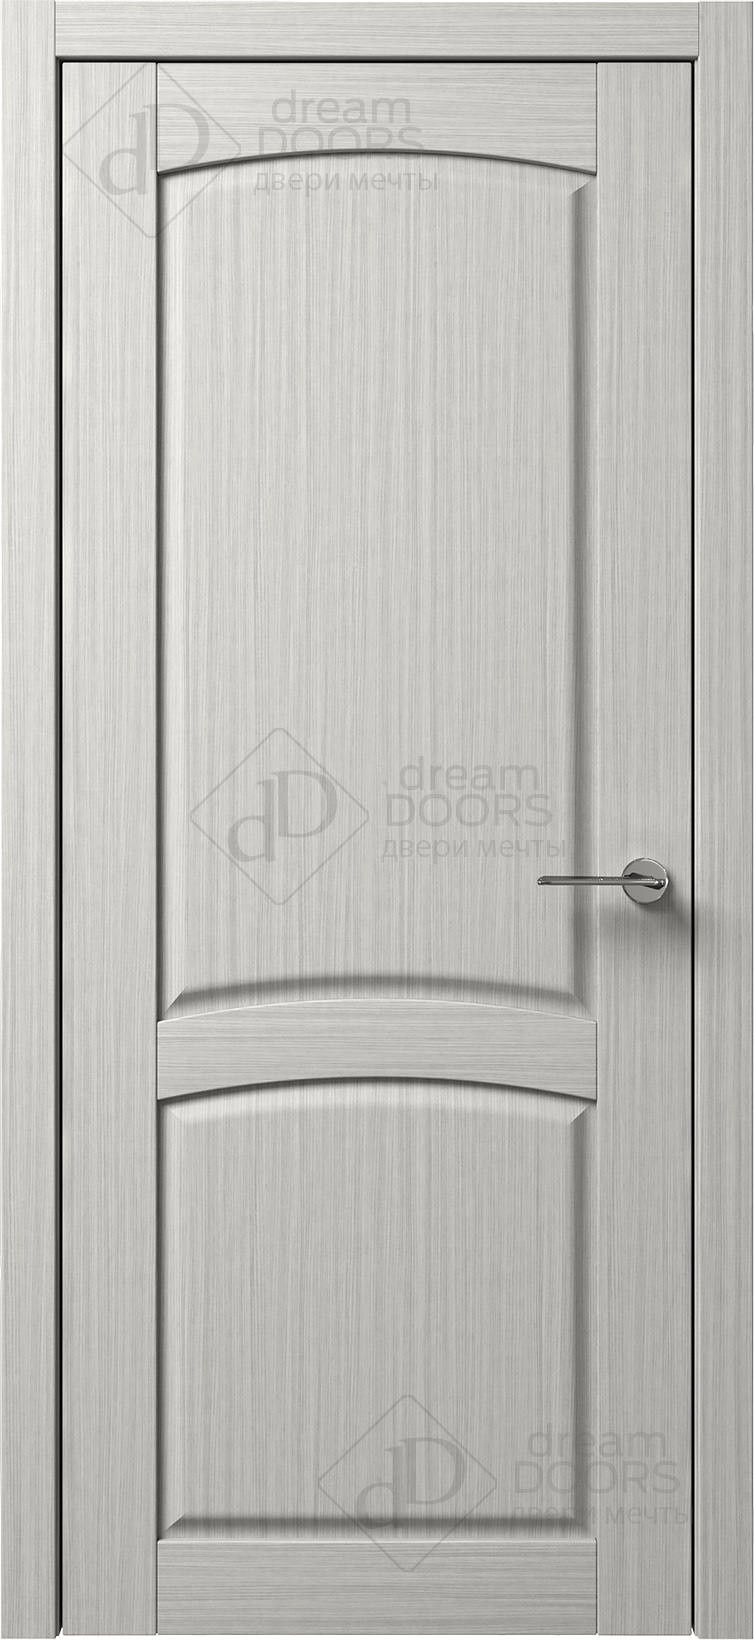 Dream Doors Межкомнатная дверь B10-3, арт. 5578 - фото №1